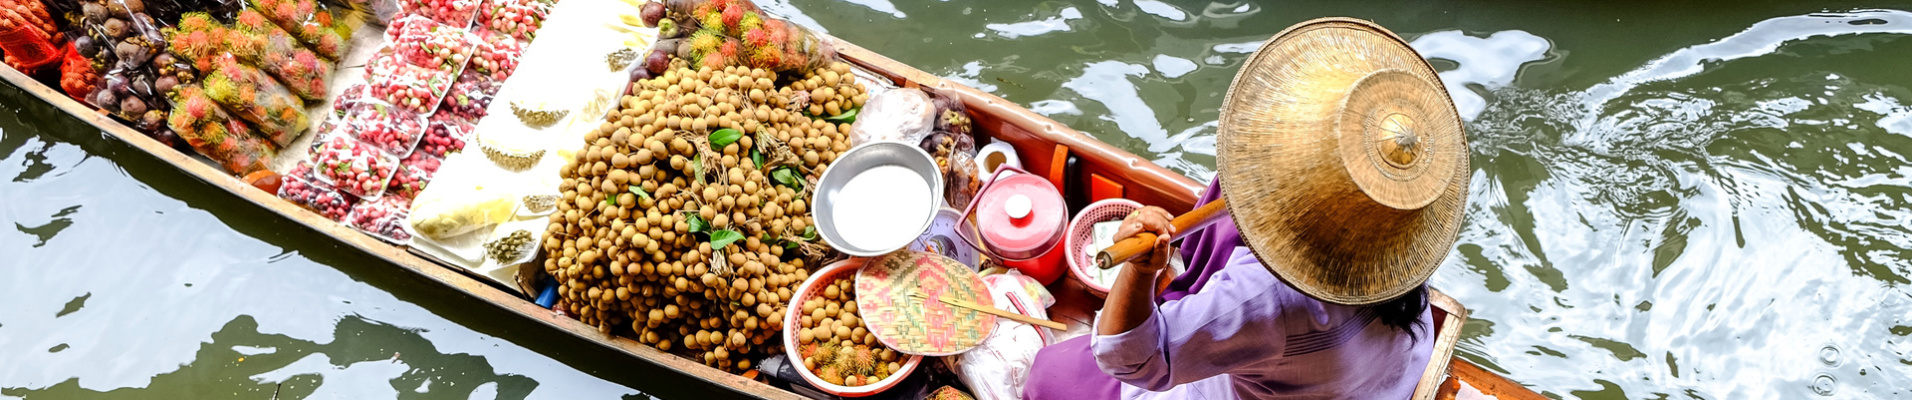 marché flottant croisiere mekong